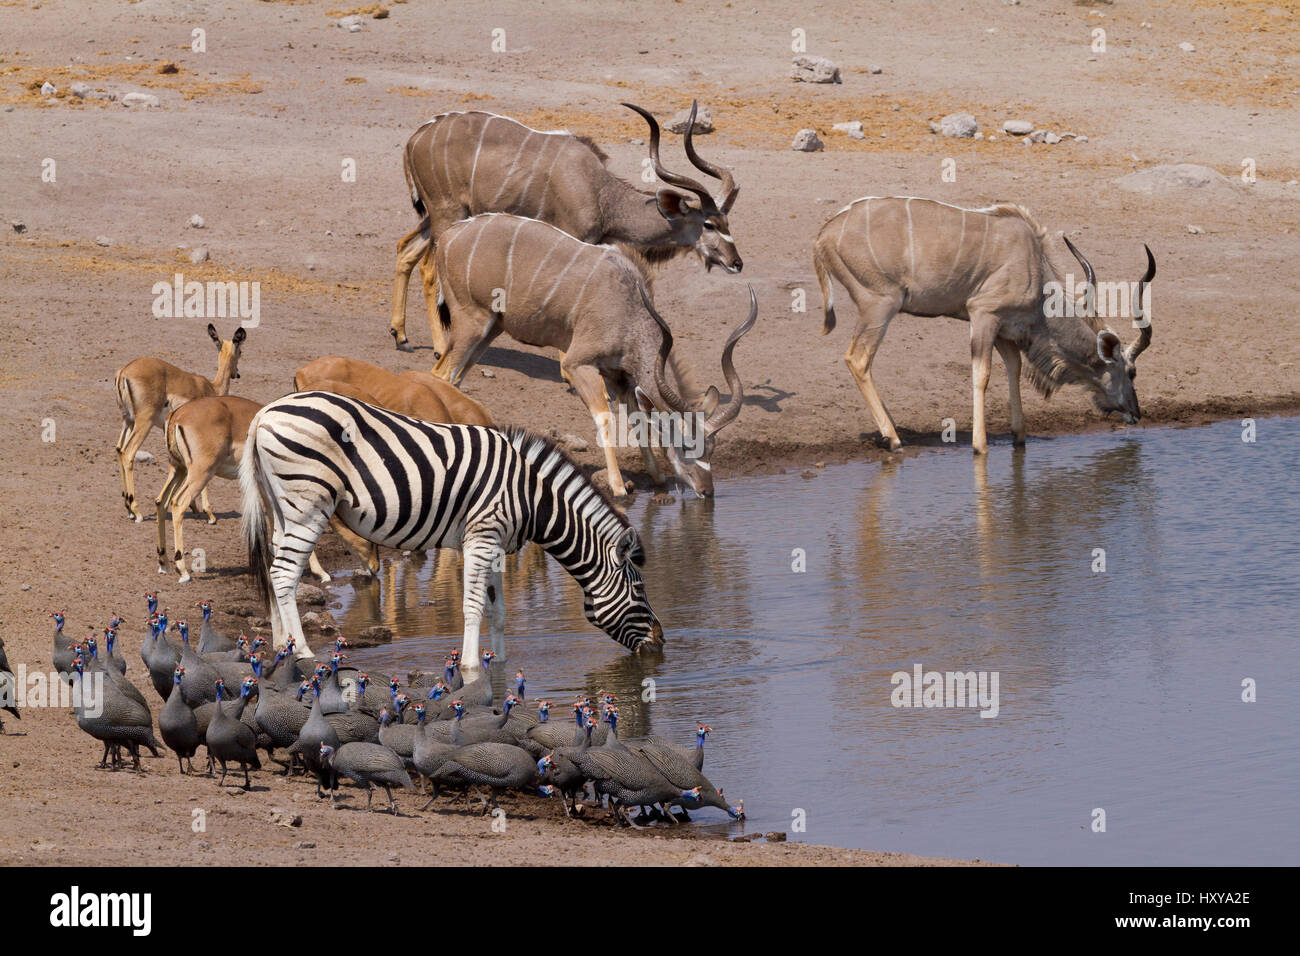 Greater kudu (Tragelaphus strepsiceros) males drinking at a waterhole with Impalas (Aepyceros melampus) and Zebras (Equus quagga) Etosha National Park, Namibia Stock Photo